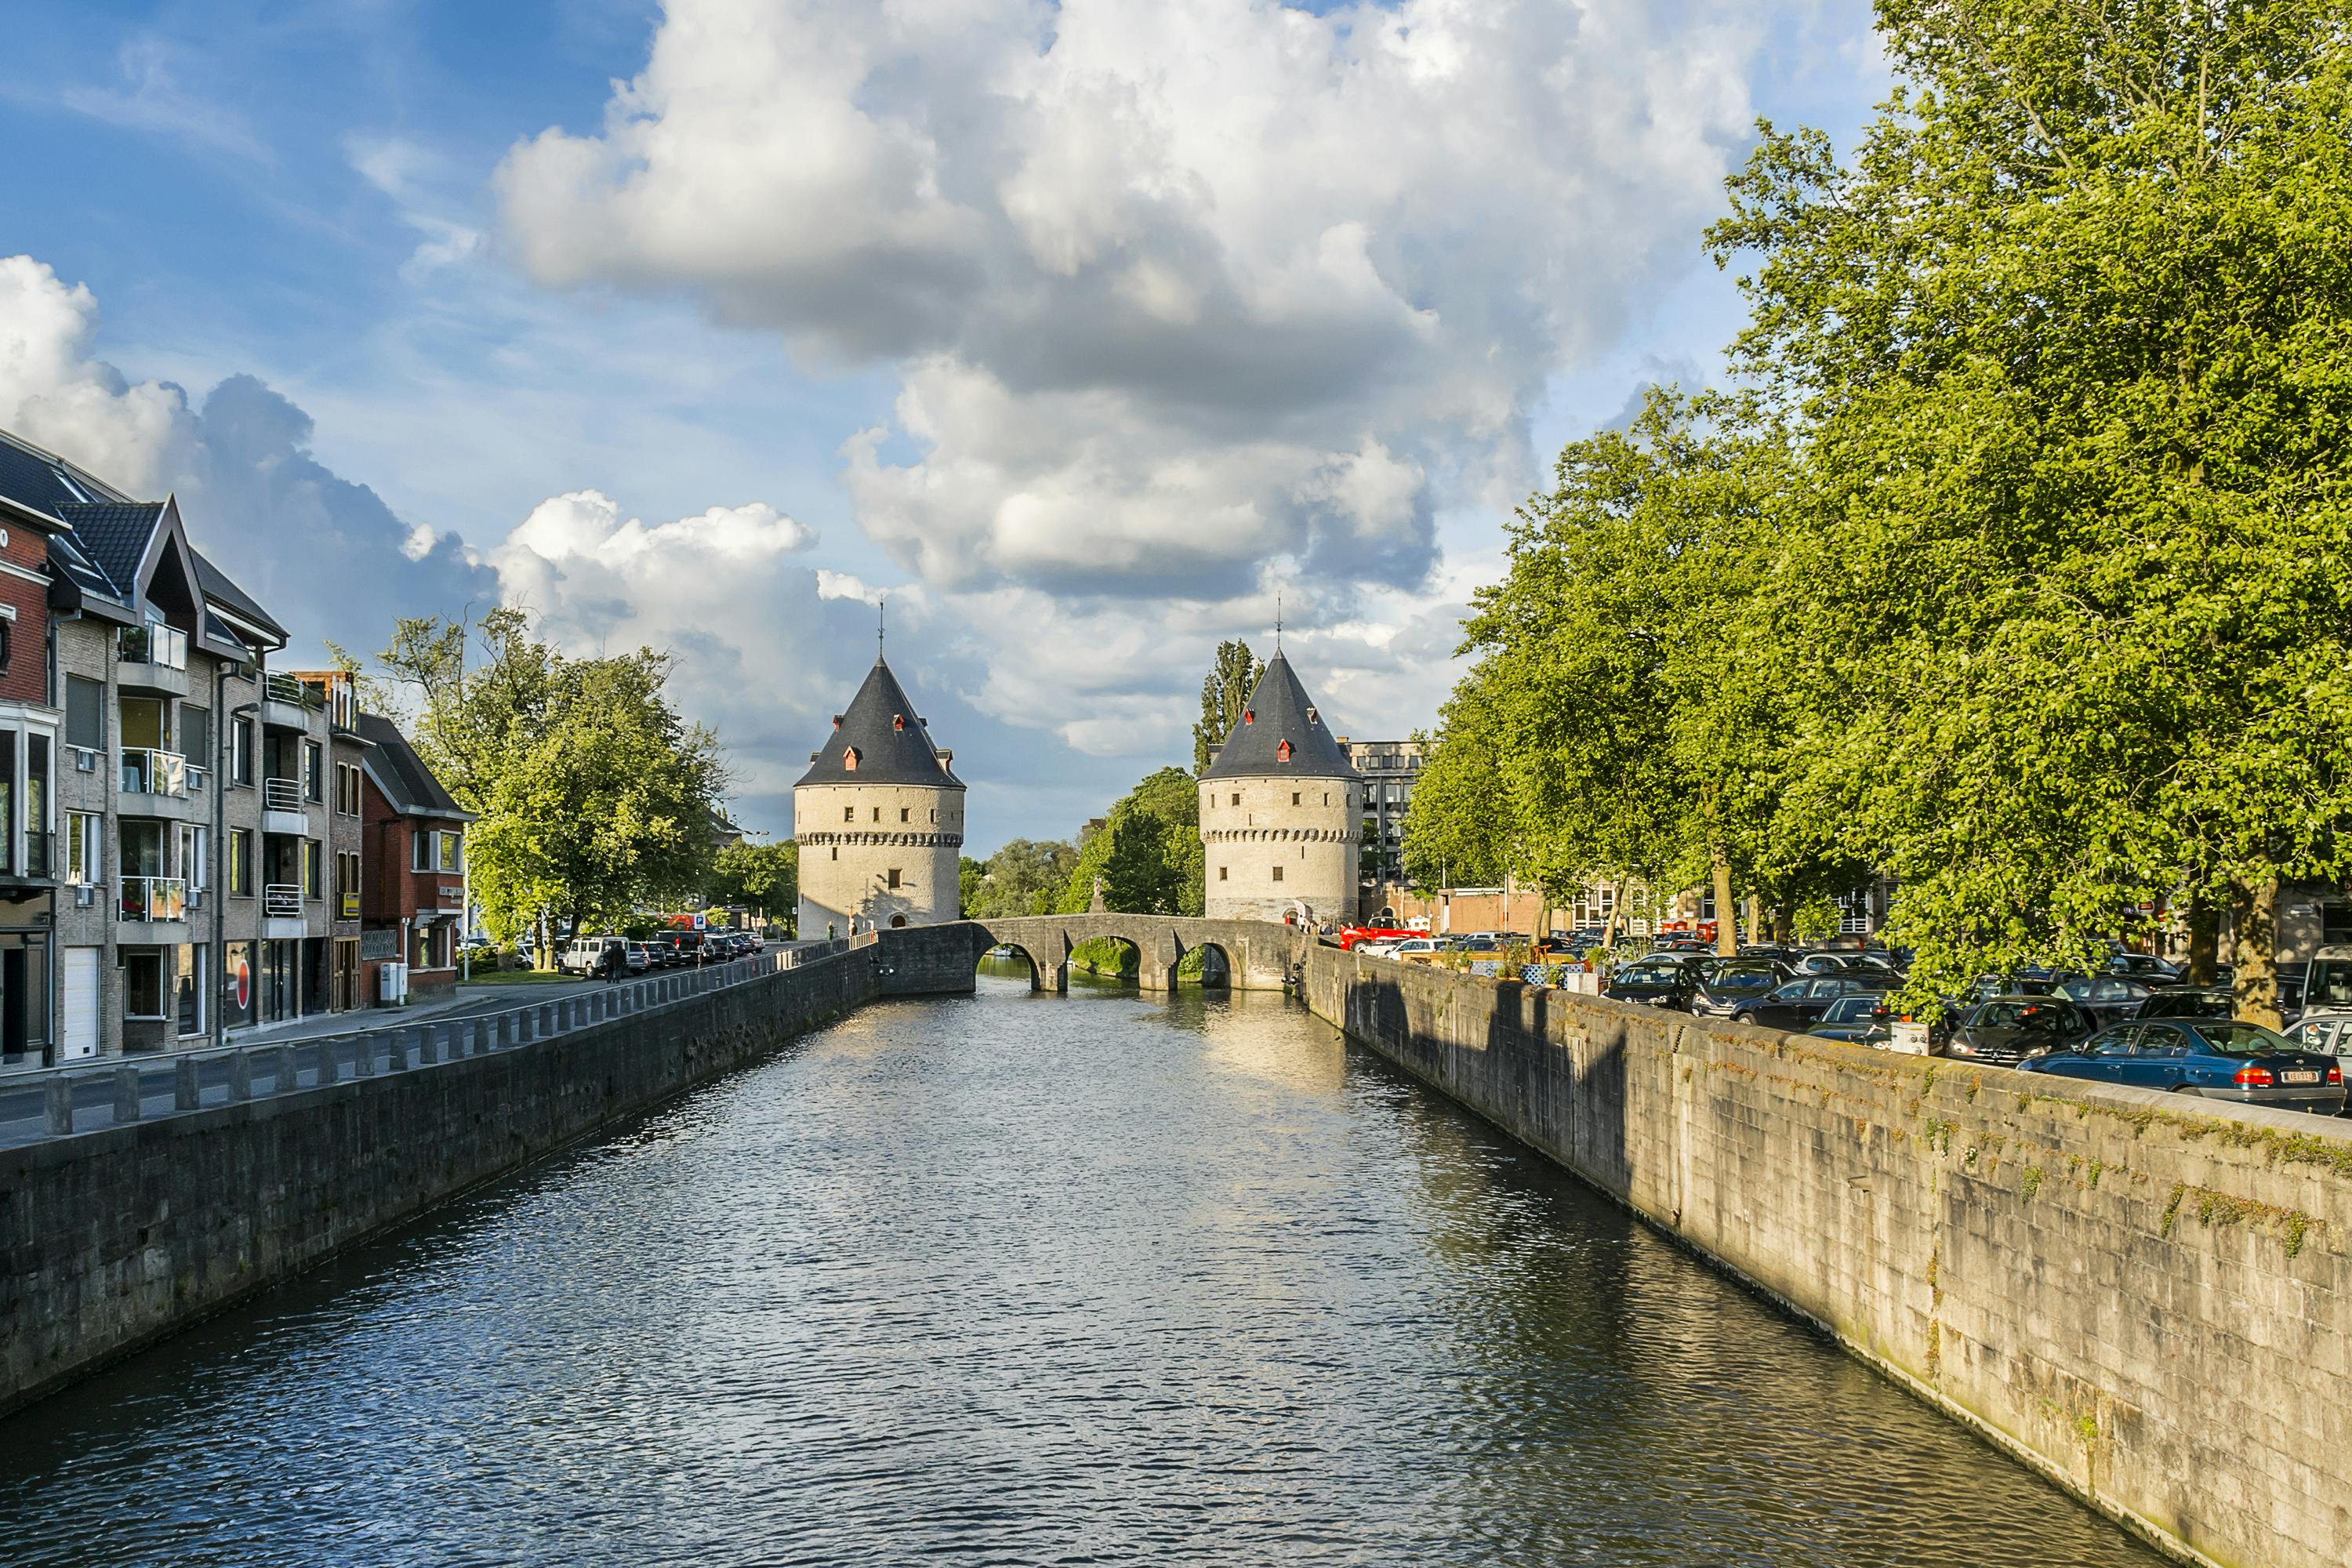 Smart wandeling in Kortrijk met een interactief stadsspel